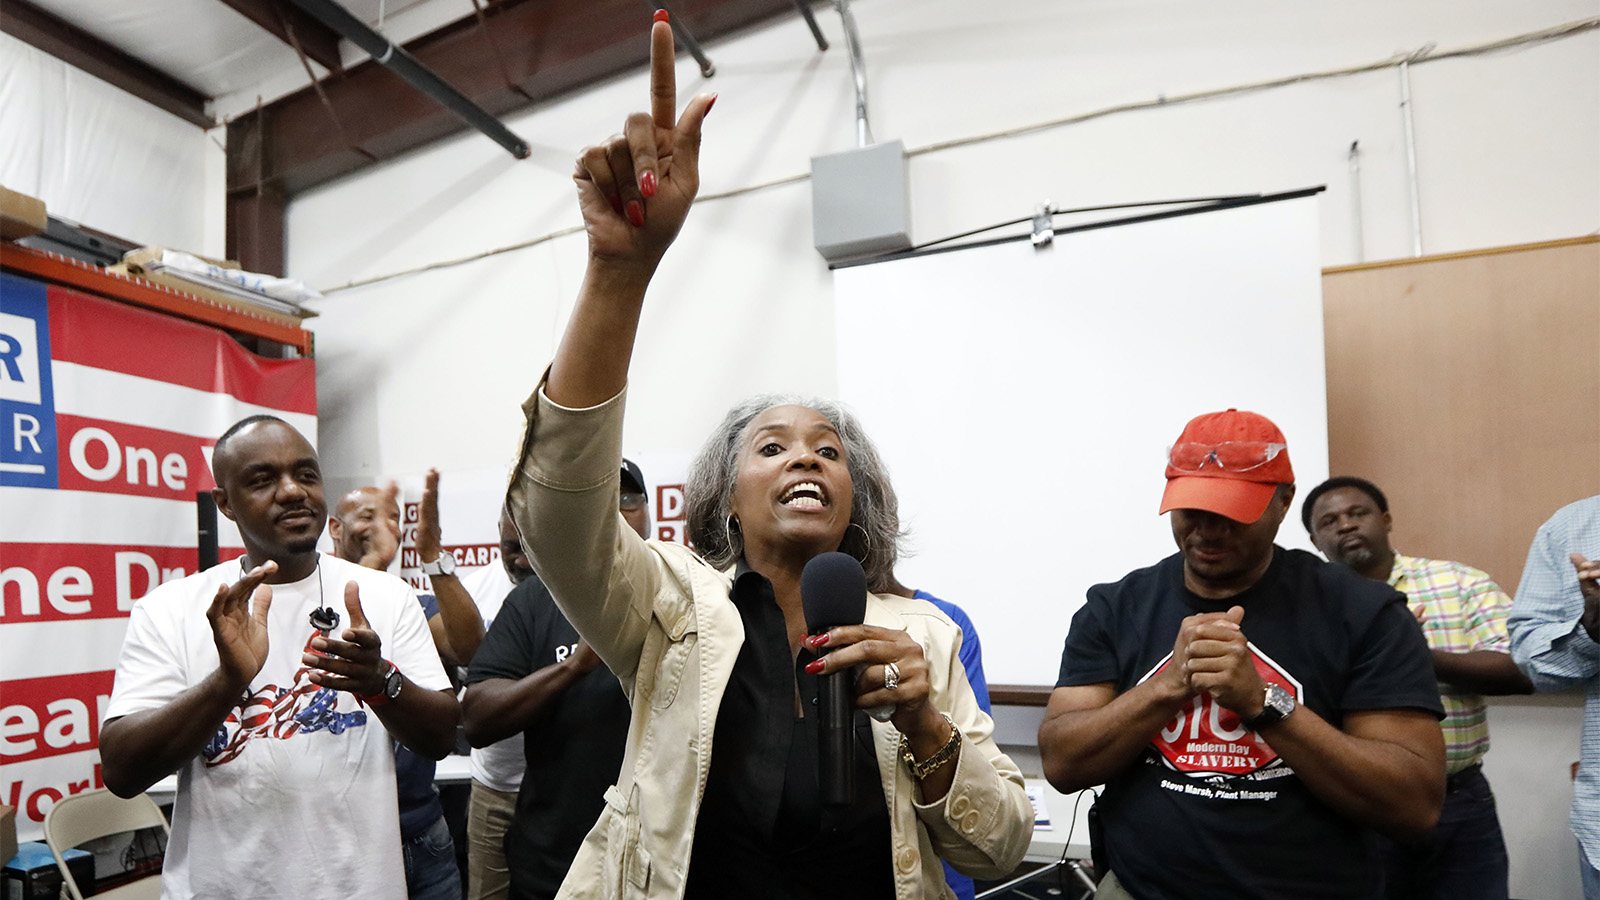 עובדת ניסאן בטי ג'ונס מעודדת את העובדים לאחר ההפסד בהצבעה על ההתאגדות במפעל (צילום: AP Photo/Rogelio V. Solis)